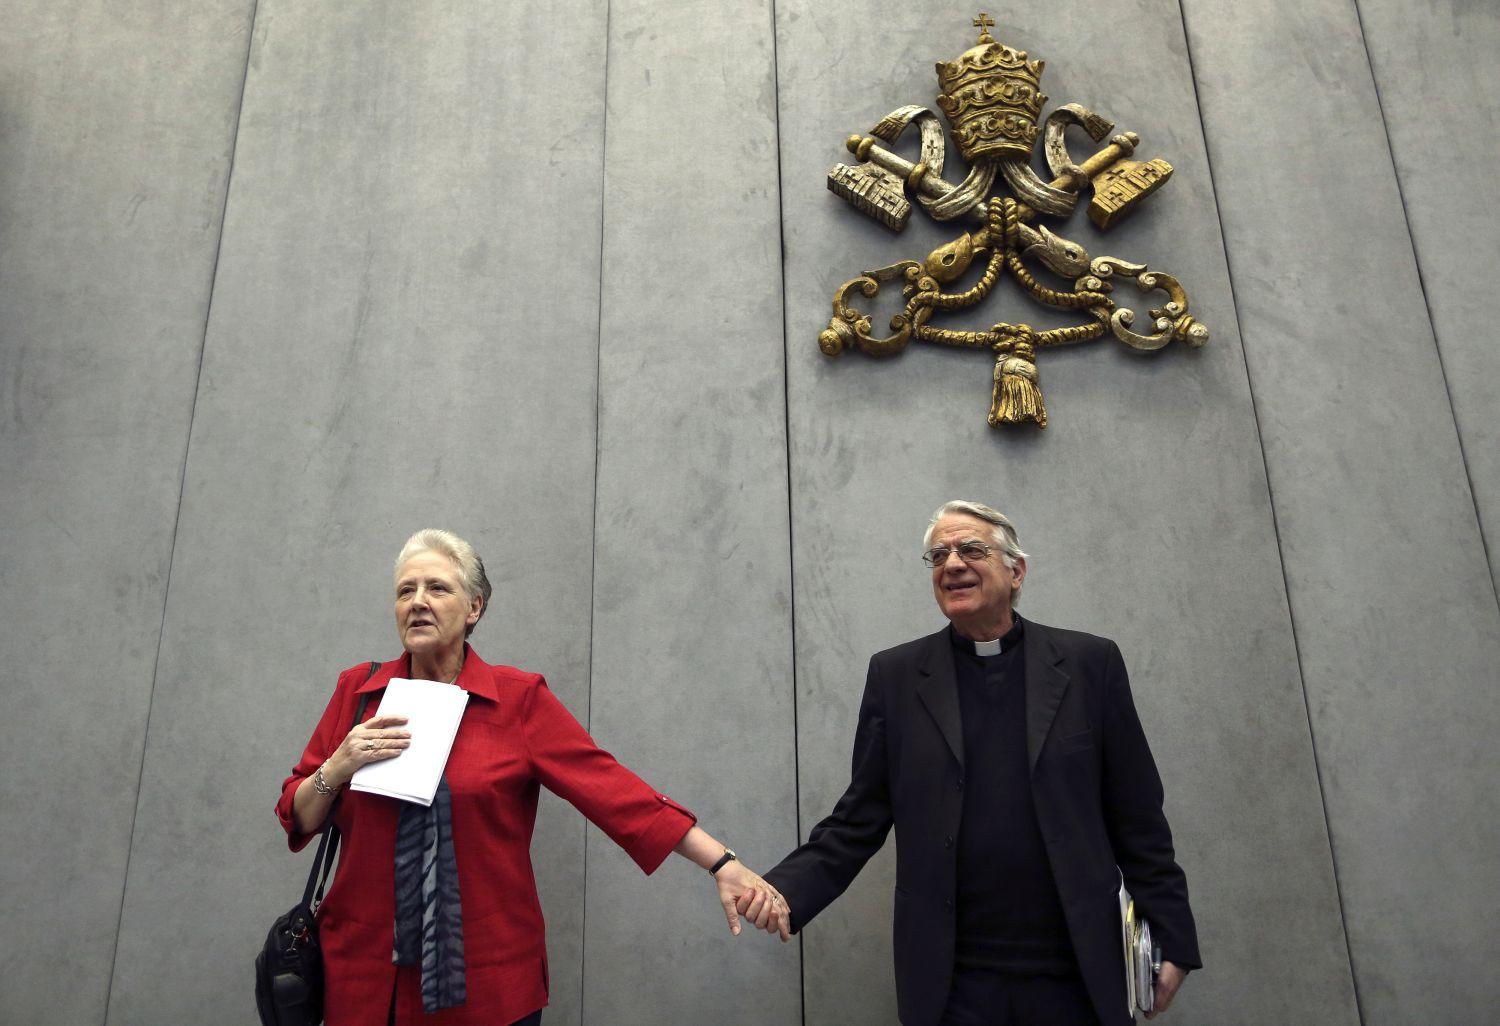 Marie Collins, a pápa által felkért fiatalkorúak védelmét garantálni hívatott bizottság tagja a vatikáni szóvivő, Federico Lombardi oldalán